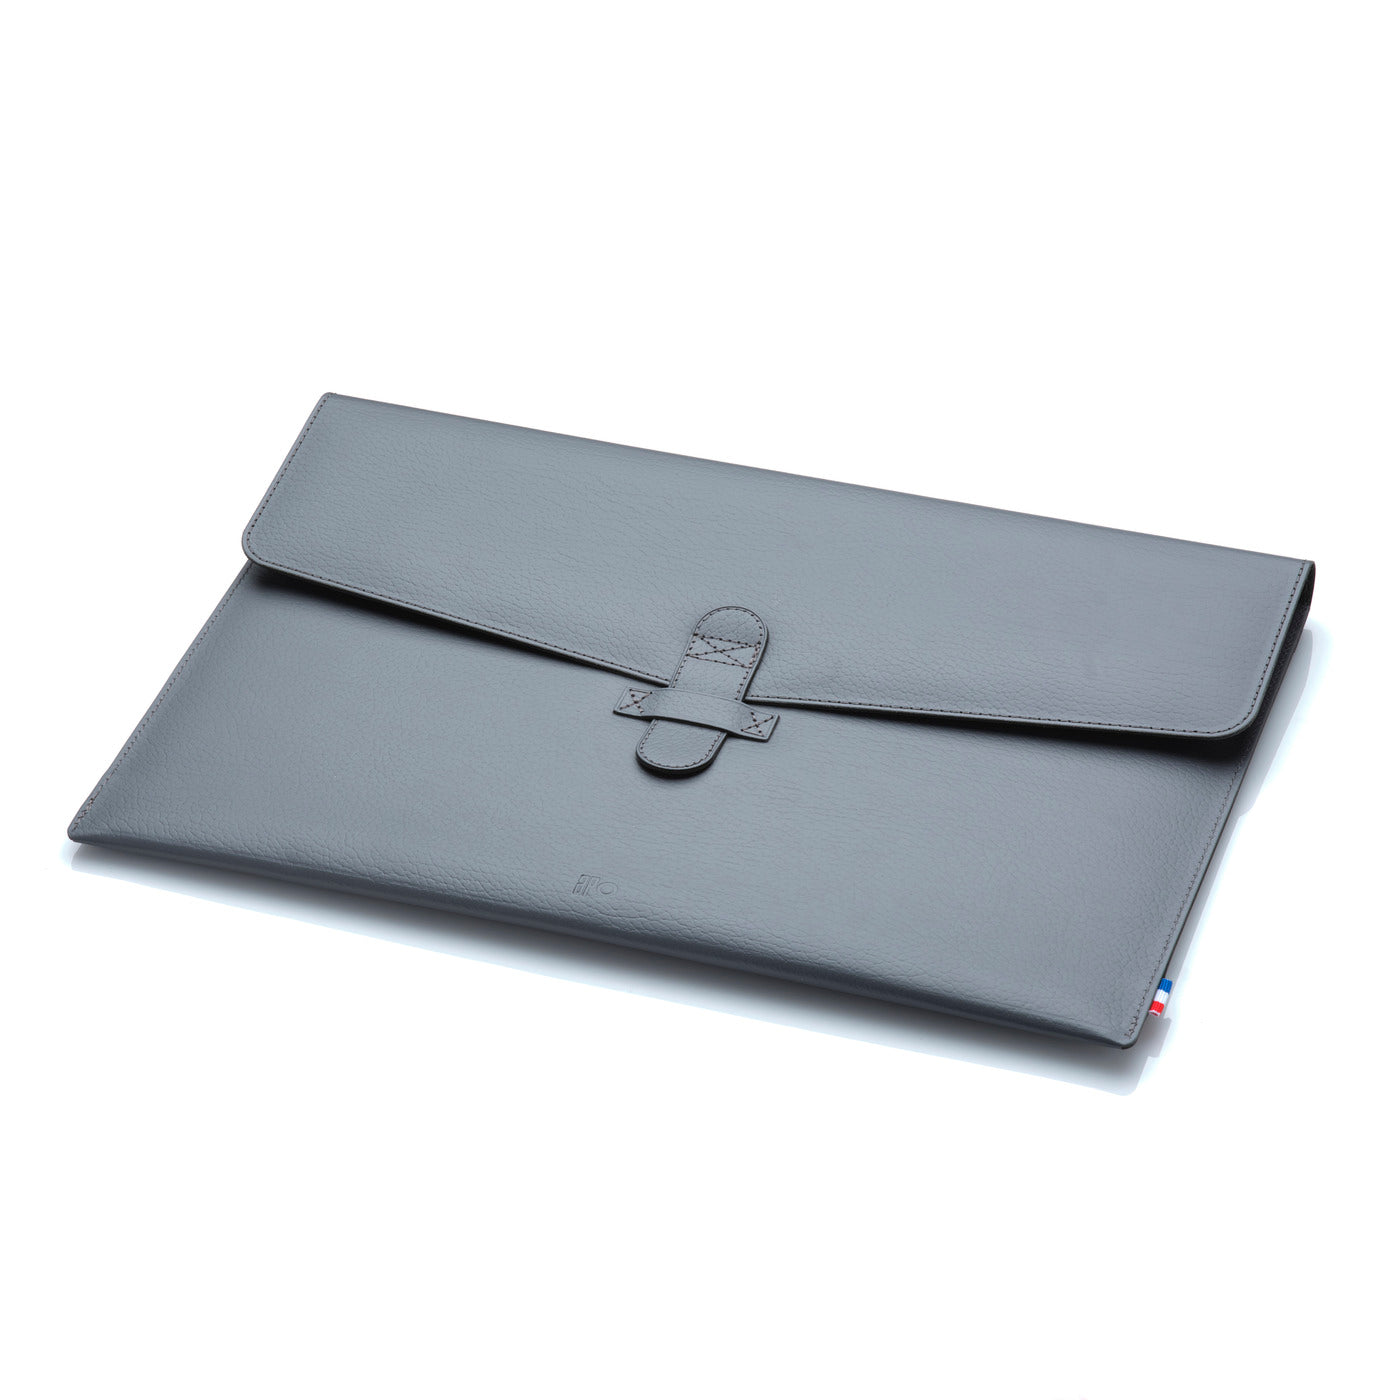 Housse en cuir véritable Saffiano pour MacBook Pro, MacBook Air